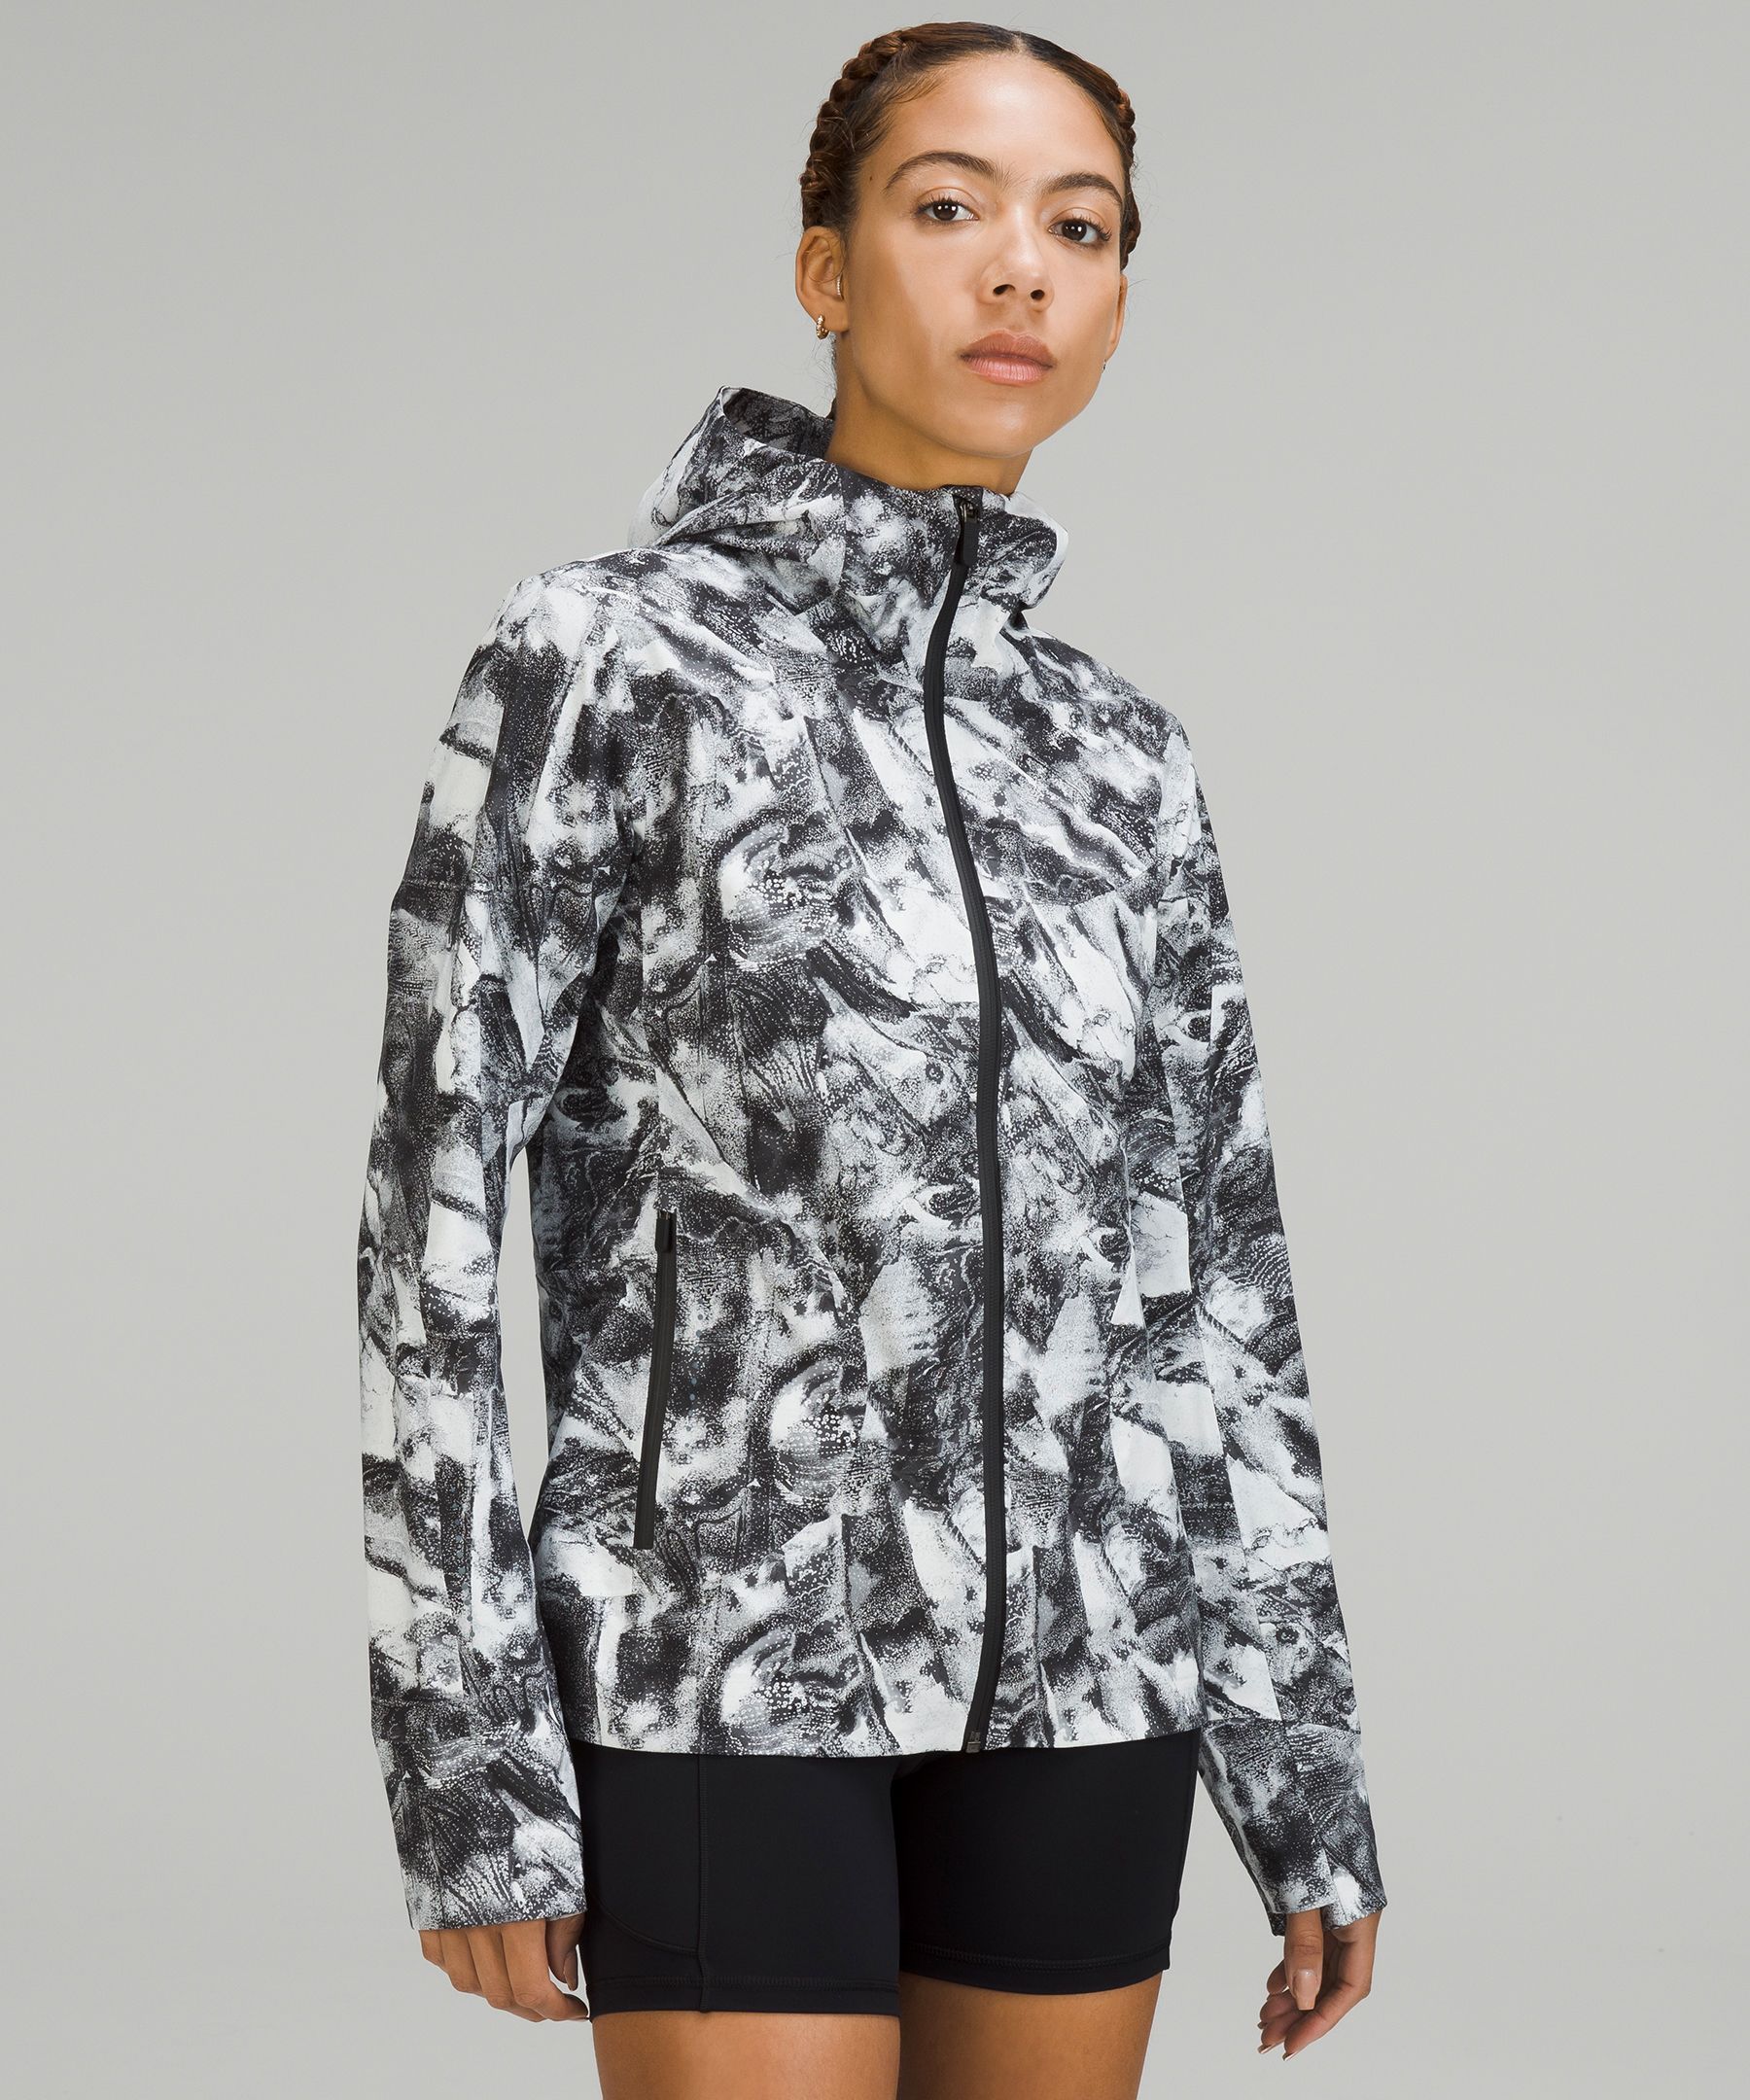 lululemon athletica Camouflage Athletic Jackets for Women